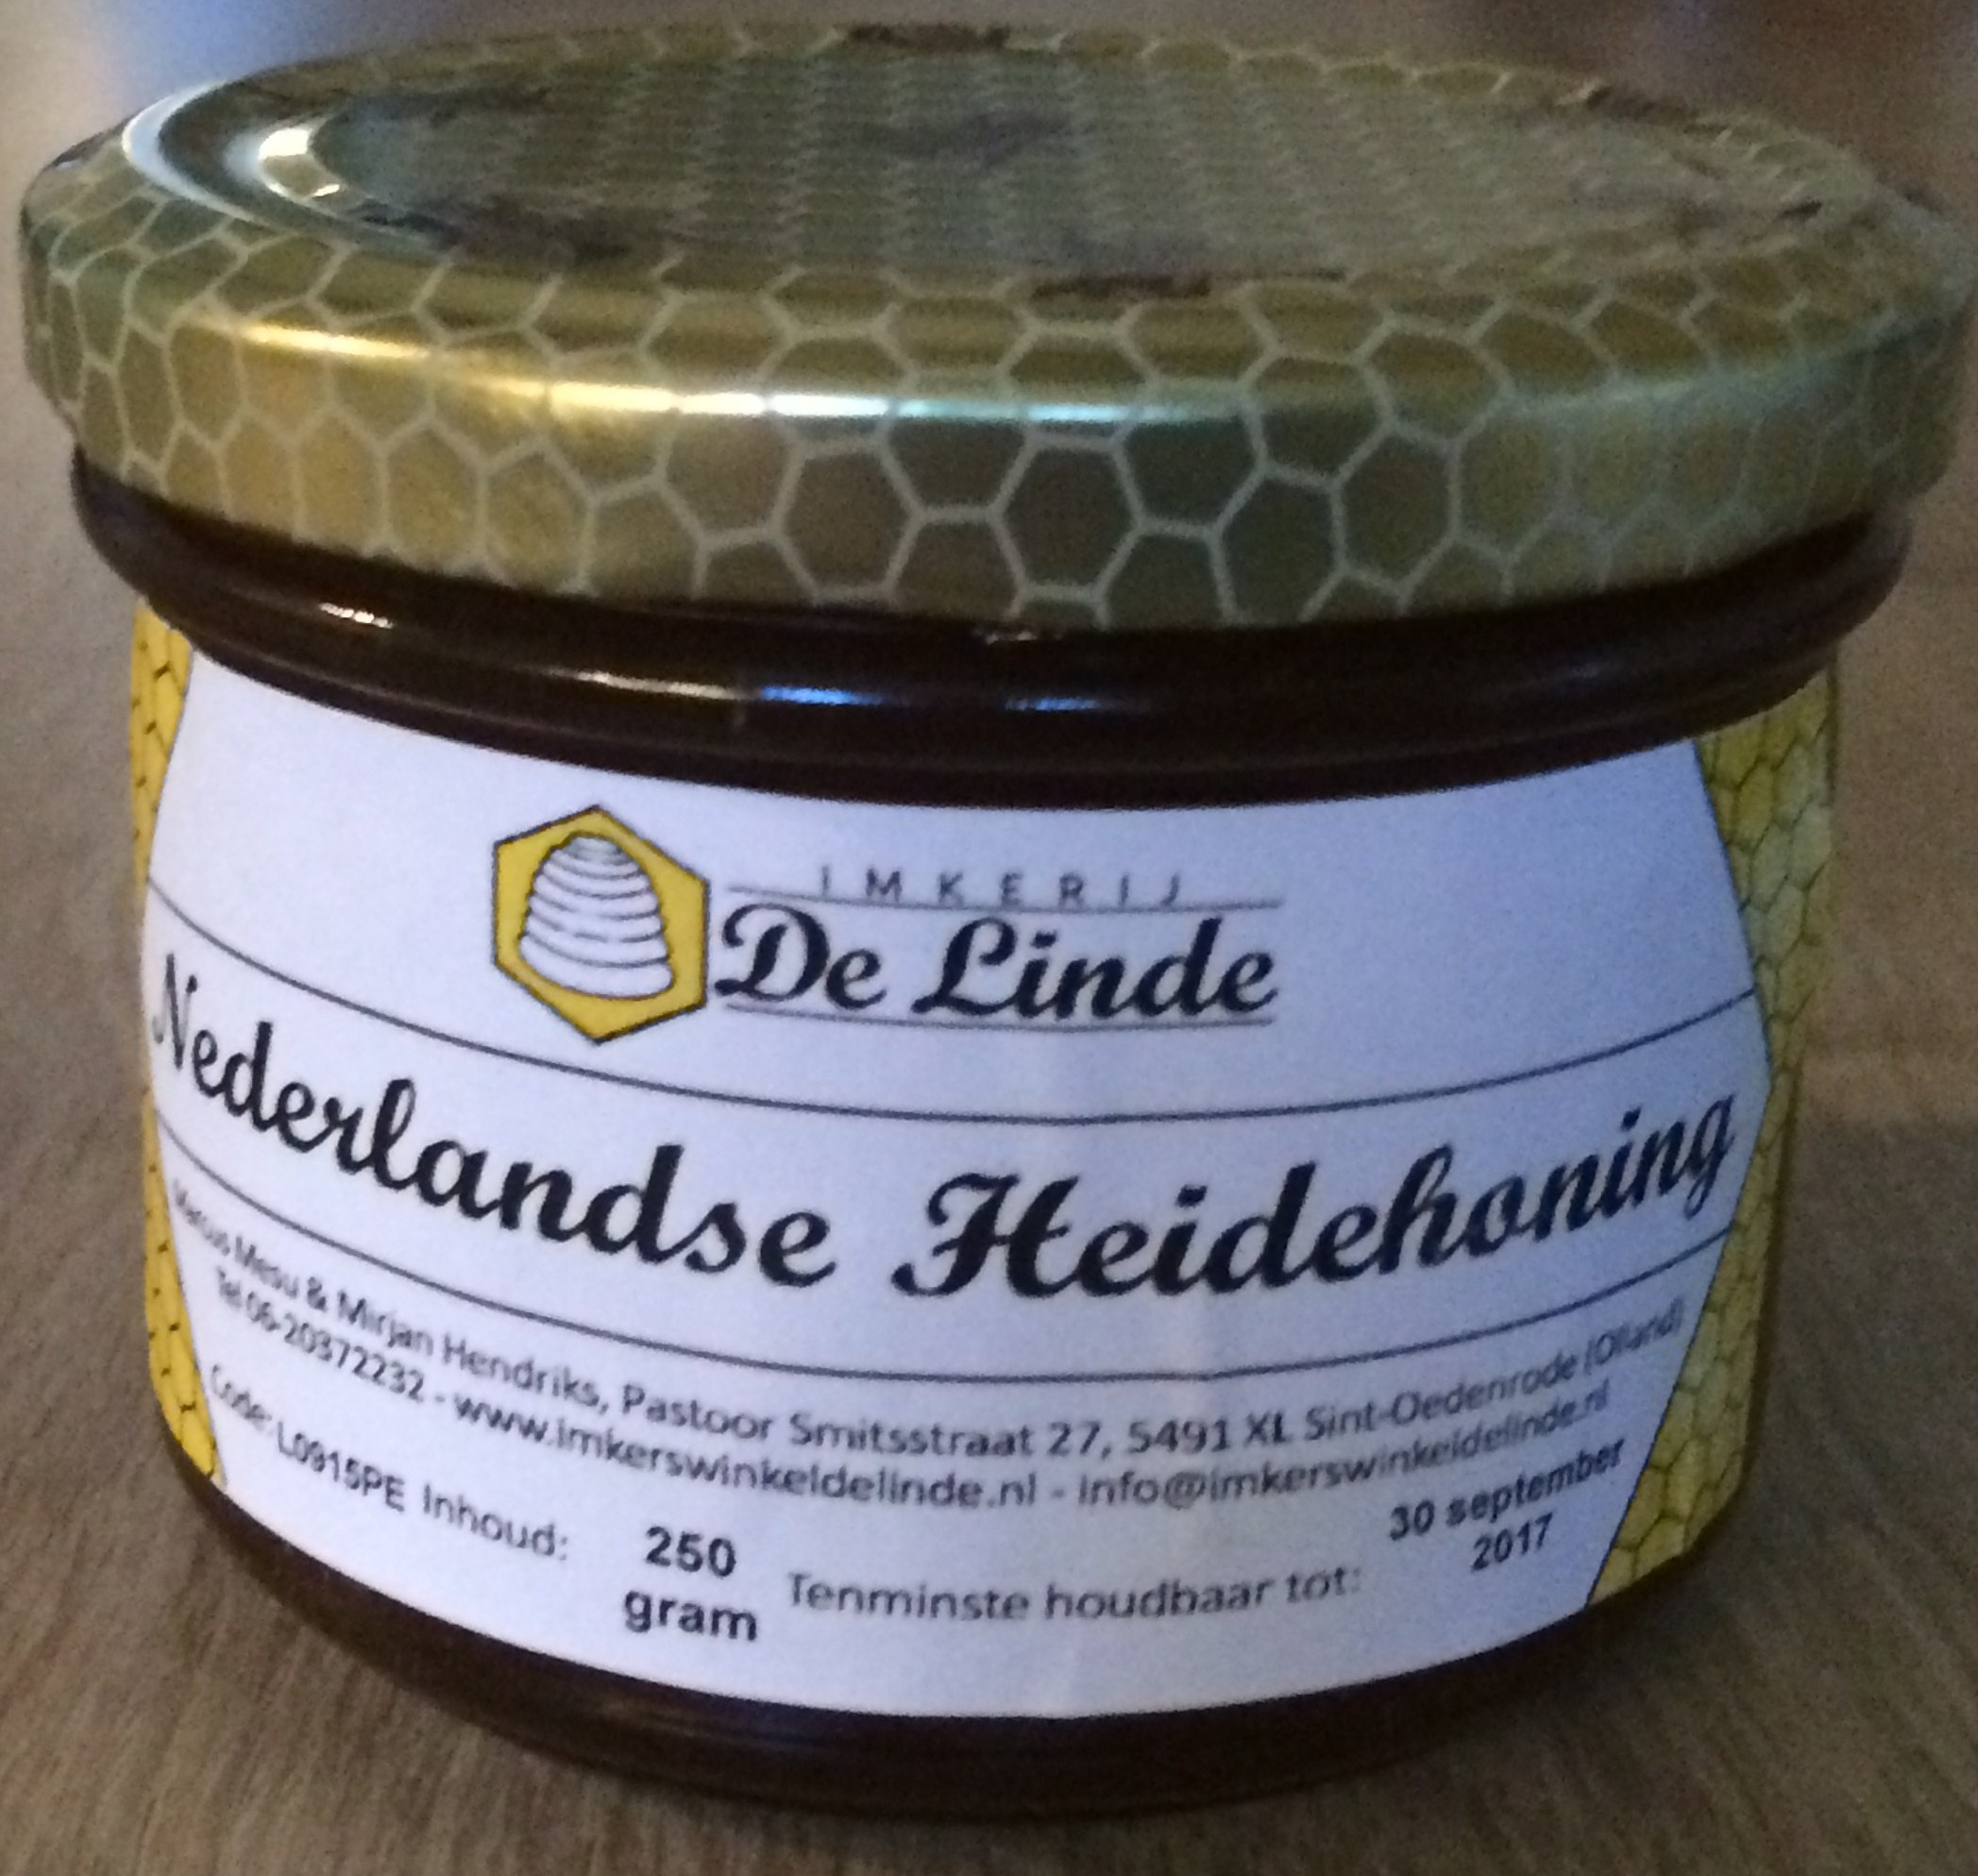 Nederlandse heidehoning, honing, heide, honing van de heide